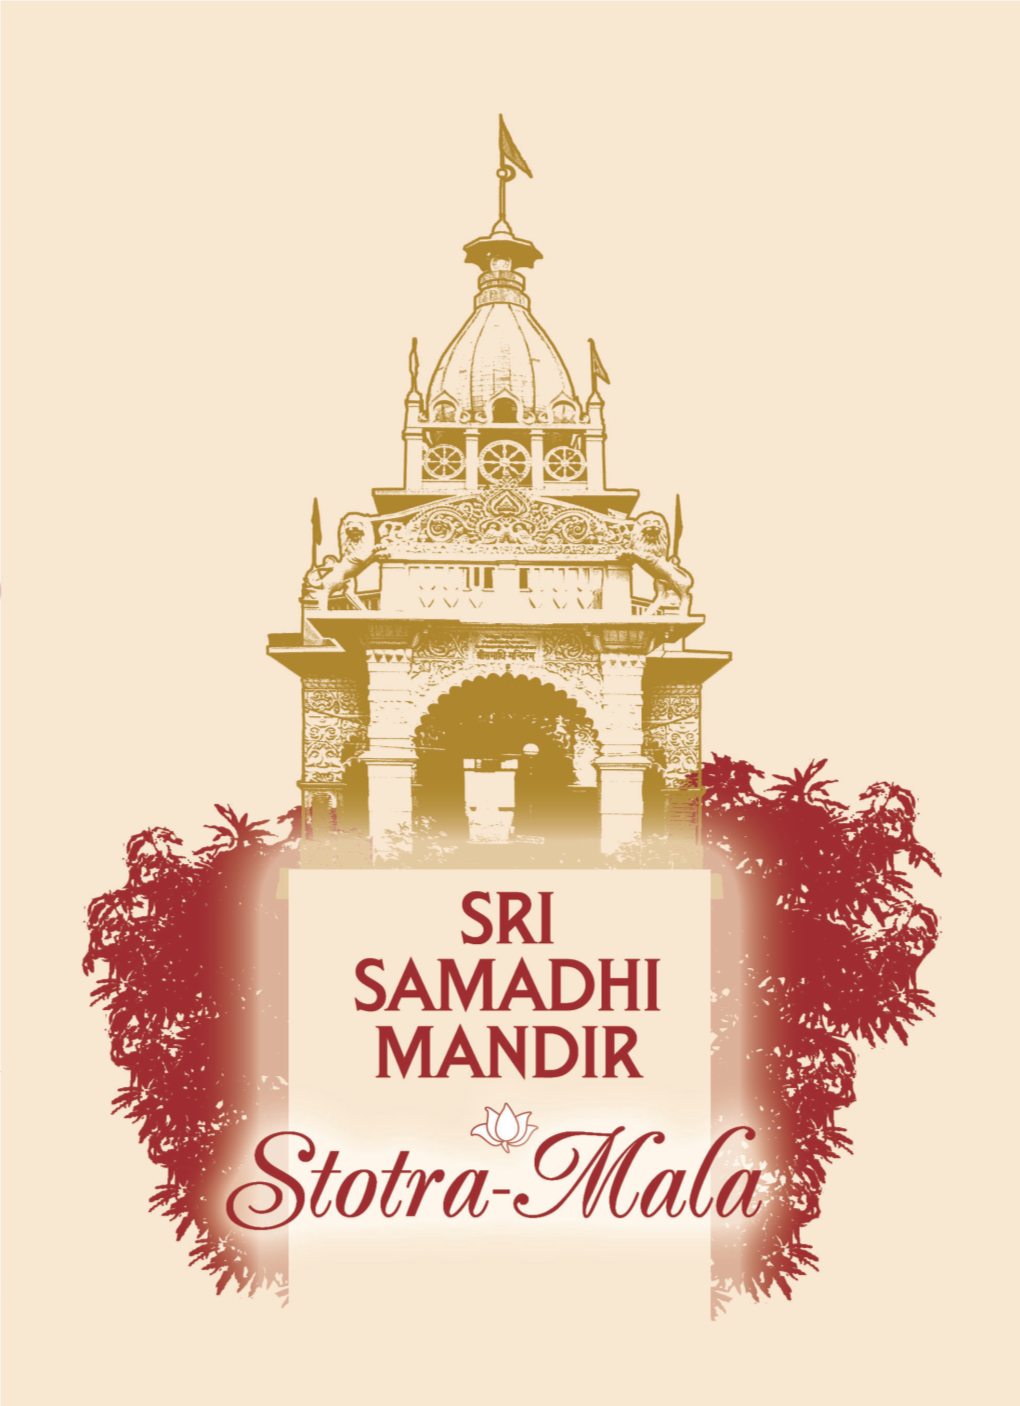 Sri Samadhi Mandir Stotra Mala